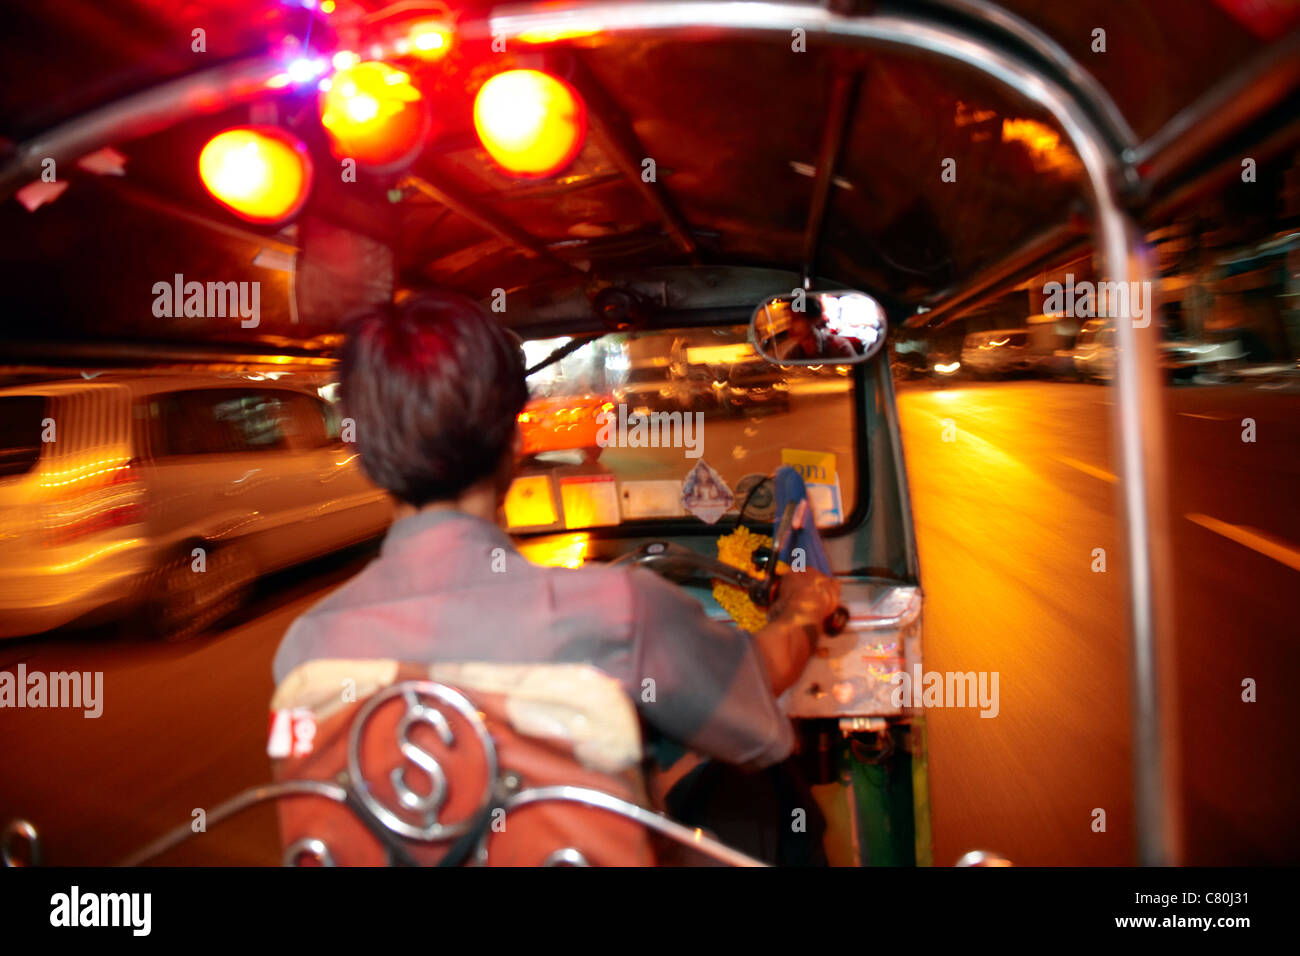 Thailand, Bangkok, Tuk Tuk Taxi Driver at night Stock Photo